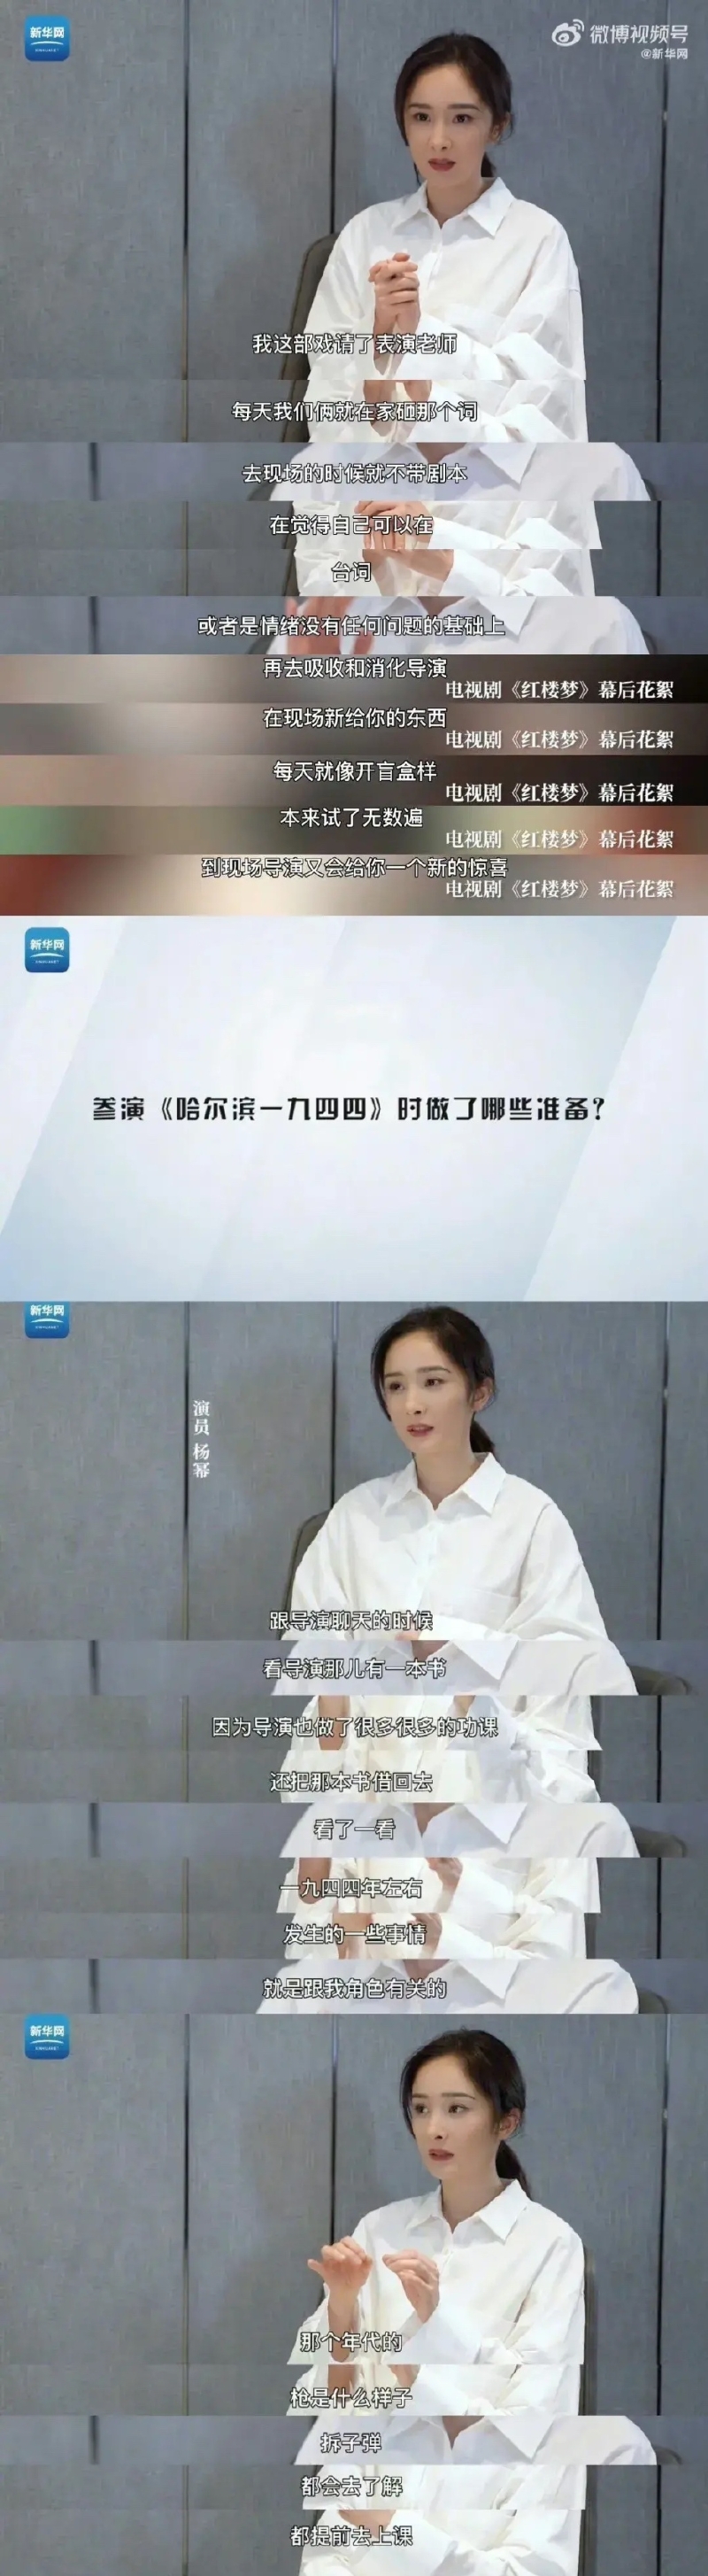 杨幂接受采访透露自己为了拍摄新戏《哈尔滨1944》特意请了表演老师